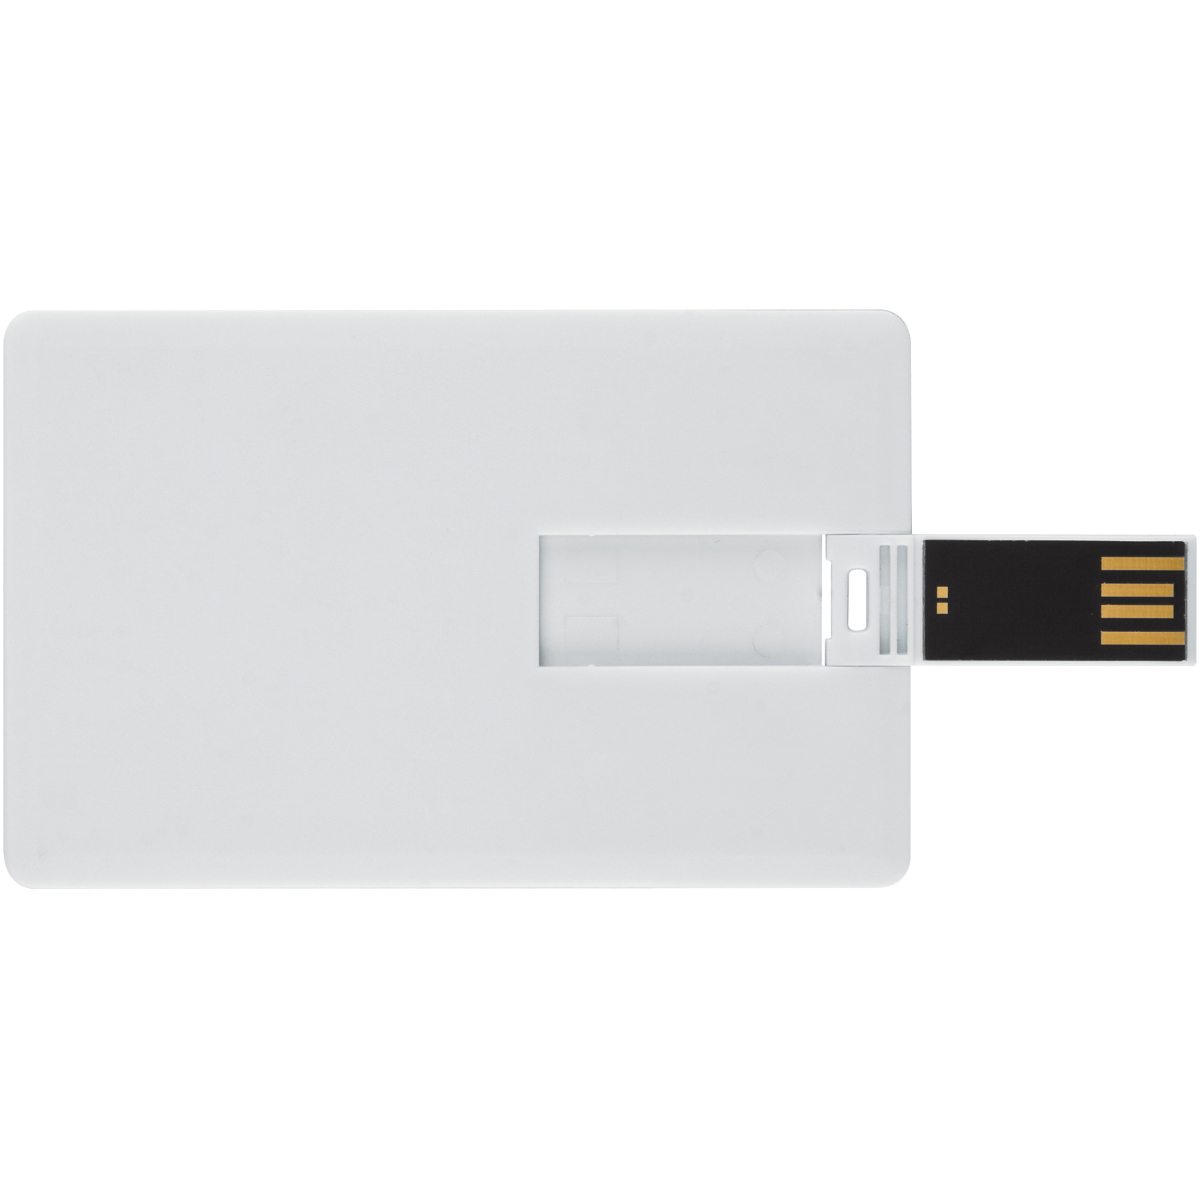 Kreditkarte ® GERMANY (Weiss, USB USB-Stick GB) 64